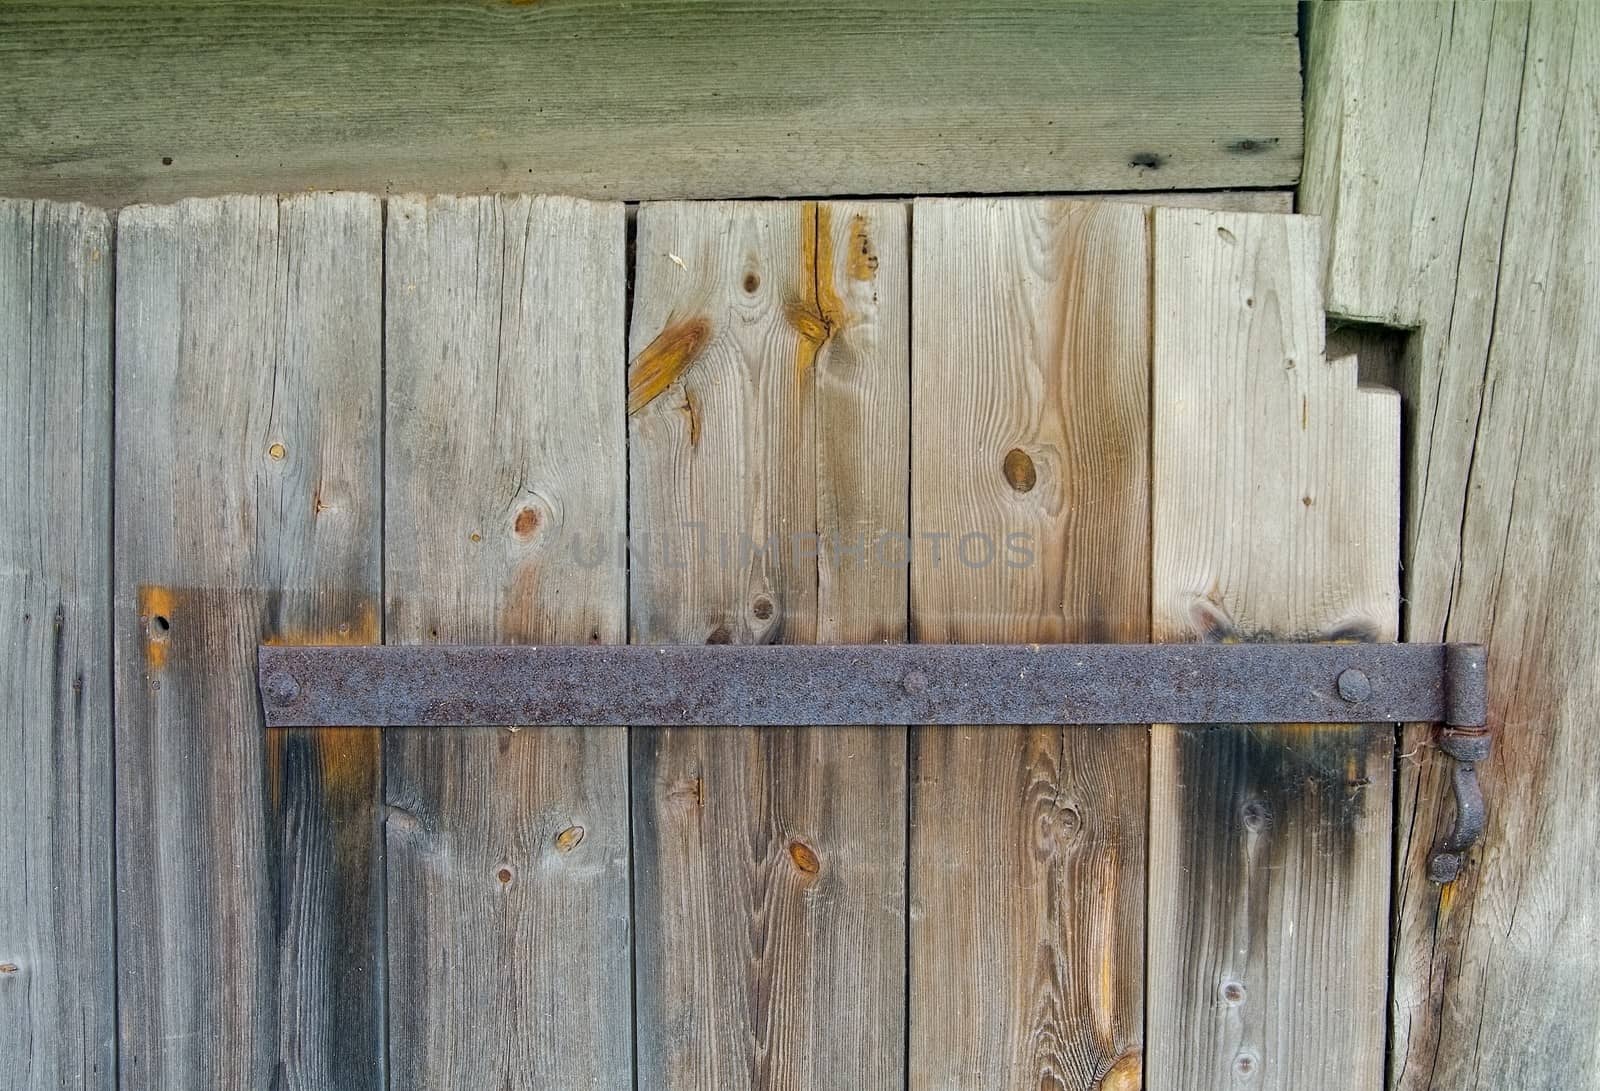 Old wooden door with rusty hinge